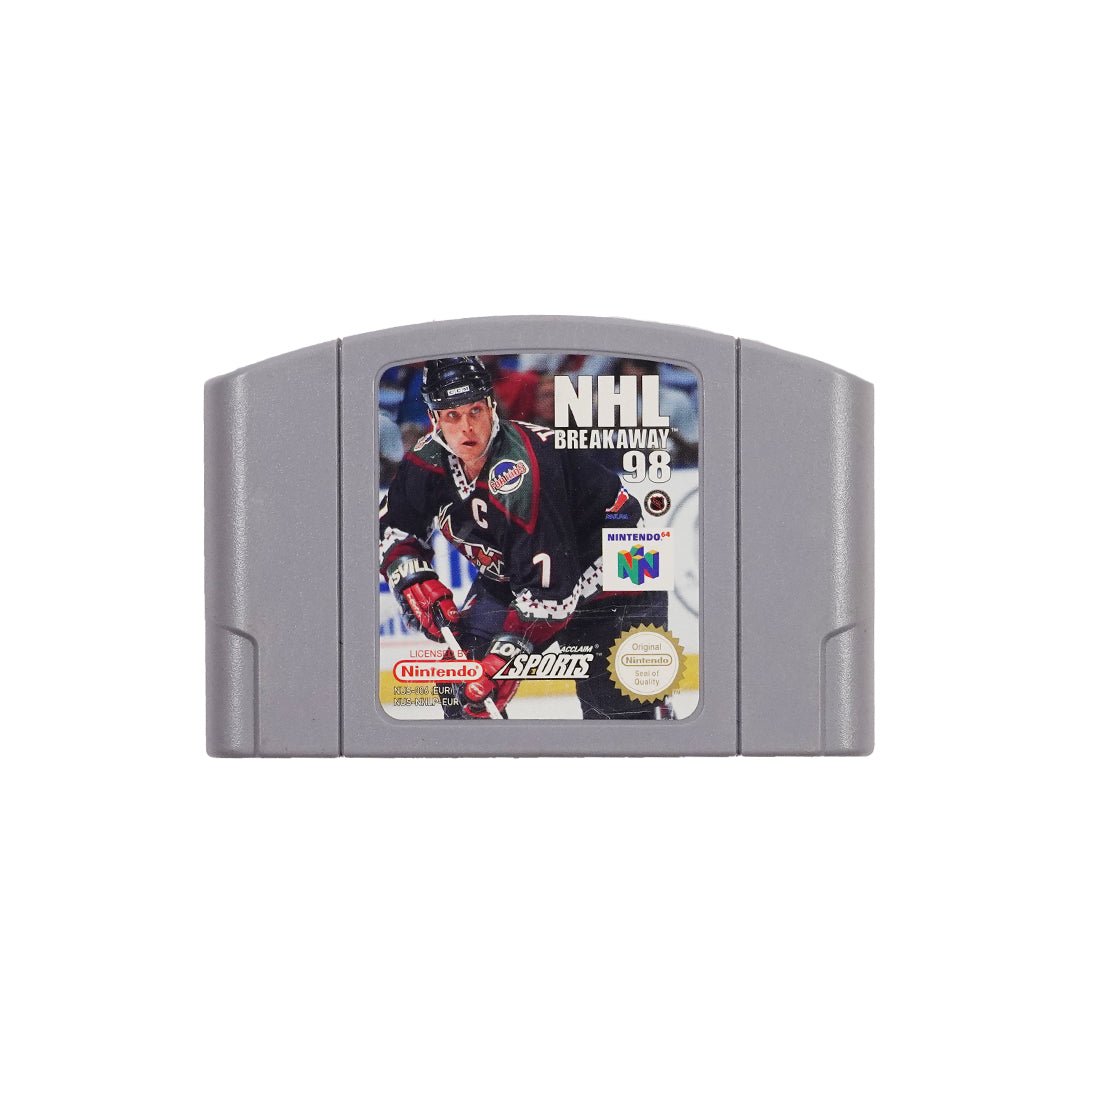 (Pre-Owned) NHL Breakaway 98 - Nintendo 64 - Store 974 | ستور ٩٧٤